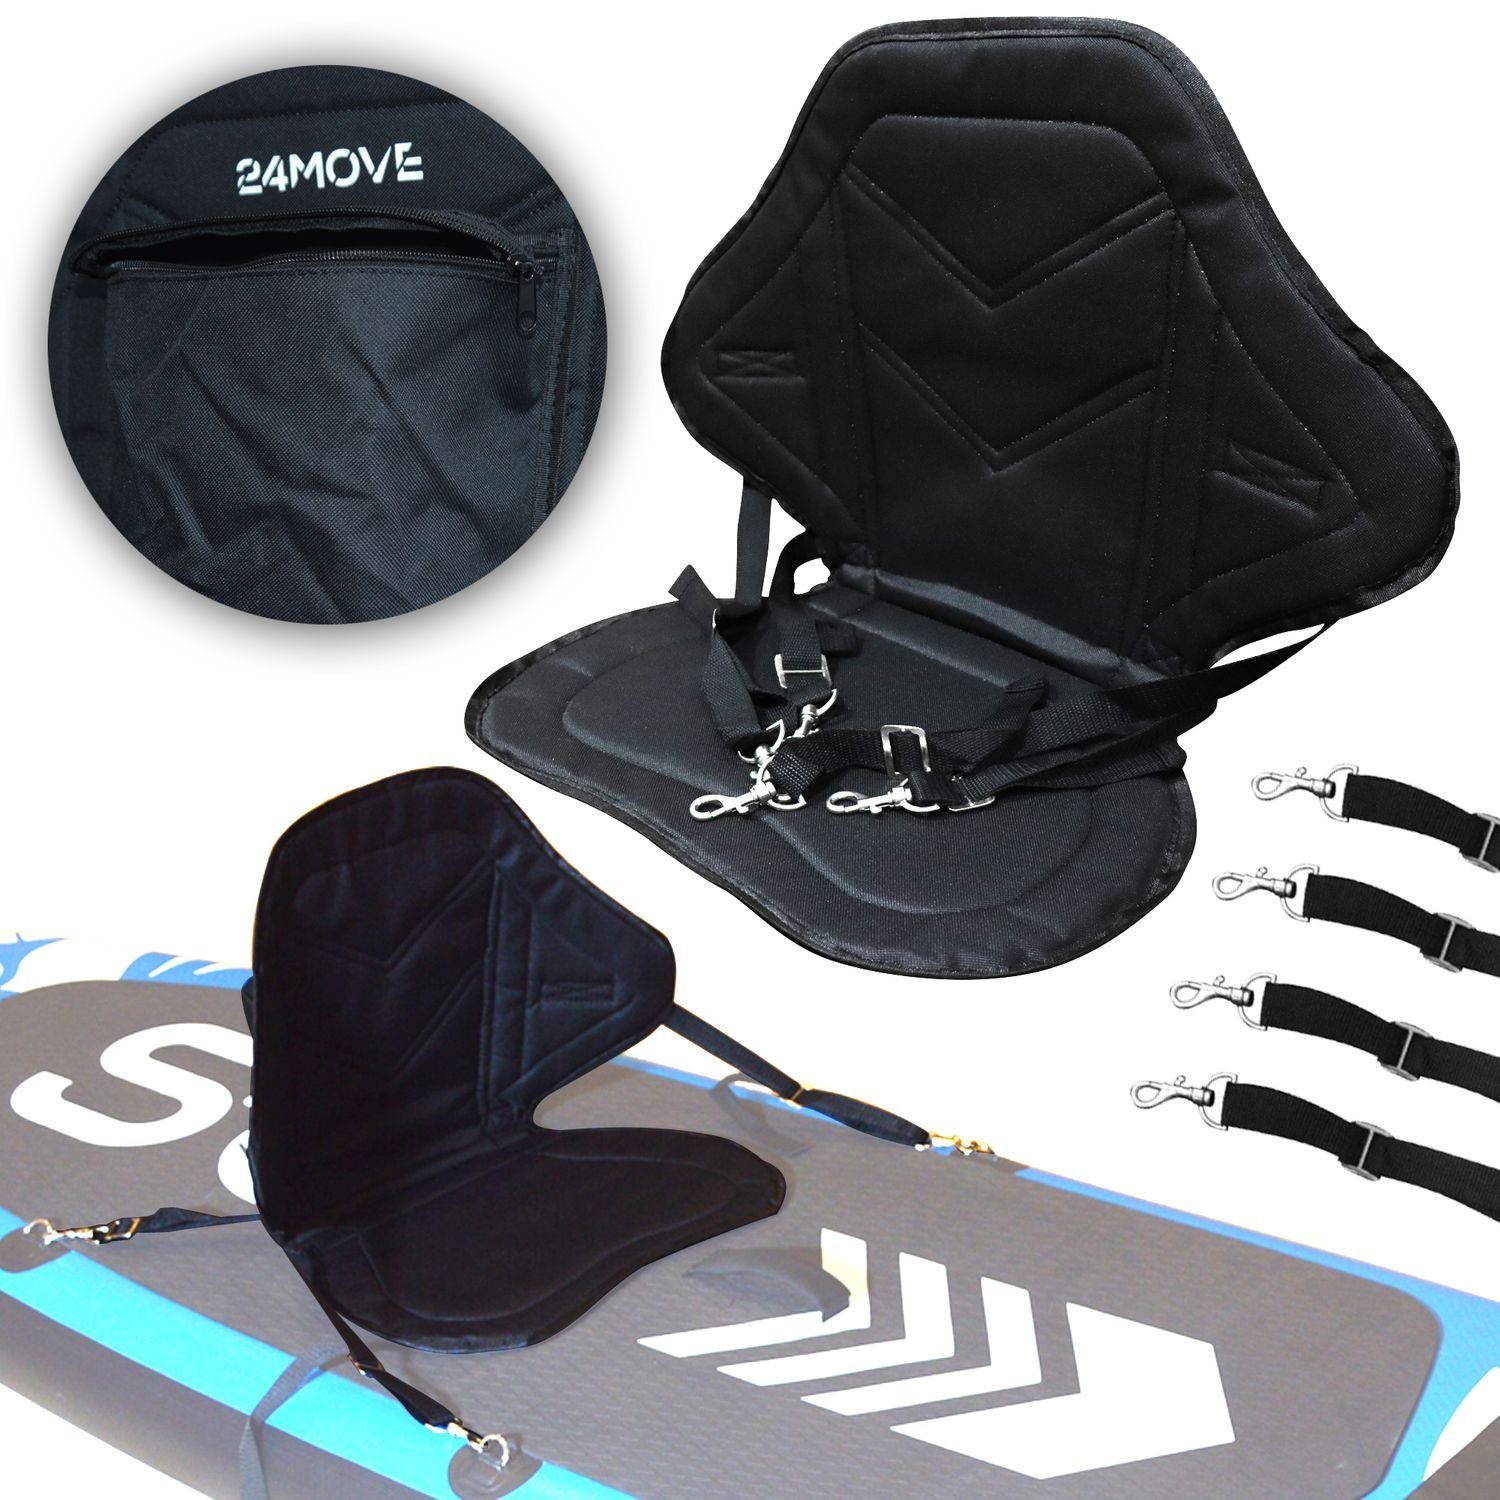 24Move SUP-Rückenlehne Kajak Sitz für Gurtbänder Paddle SUP Boards, (verstellbare und variabel einsetzbar integrierter universal, elastisch Tasche), gepolstert